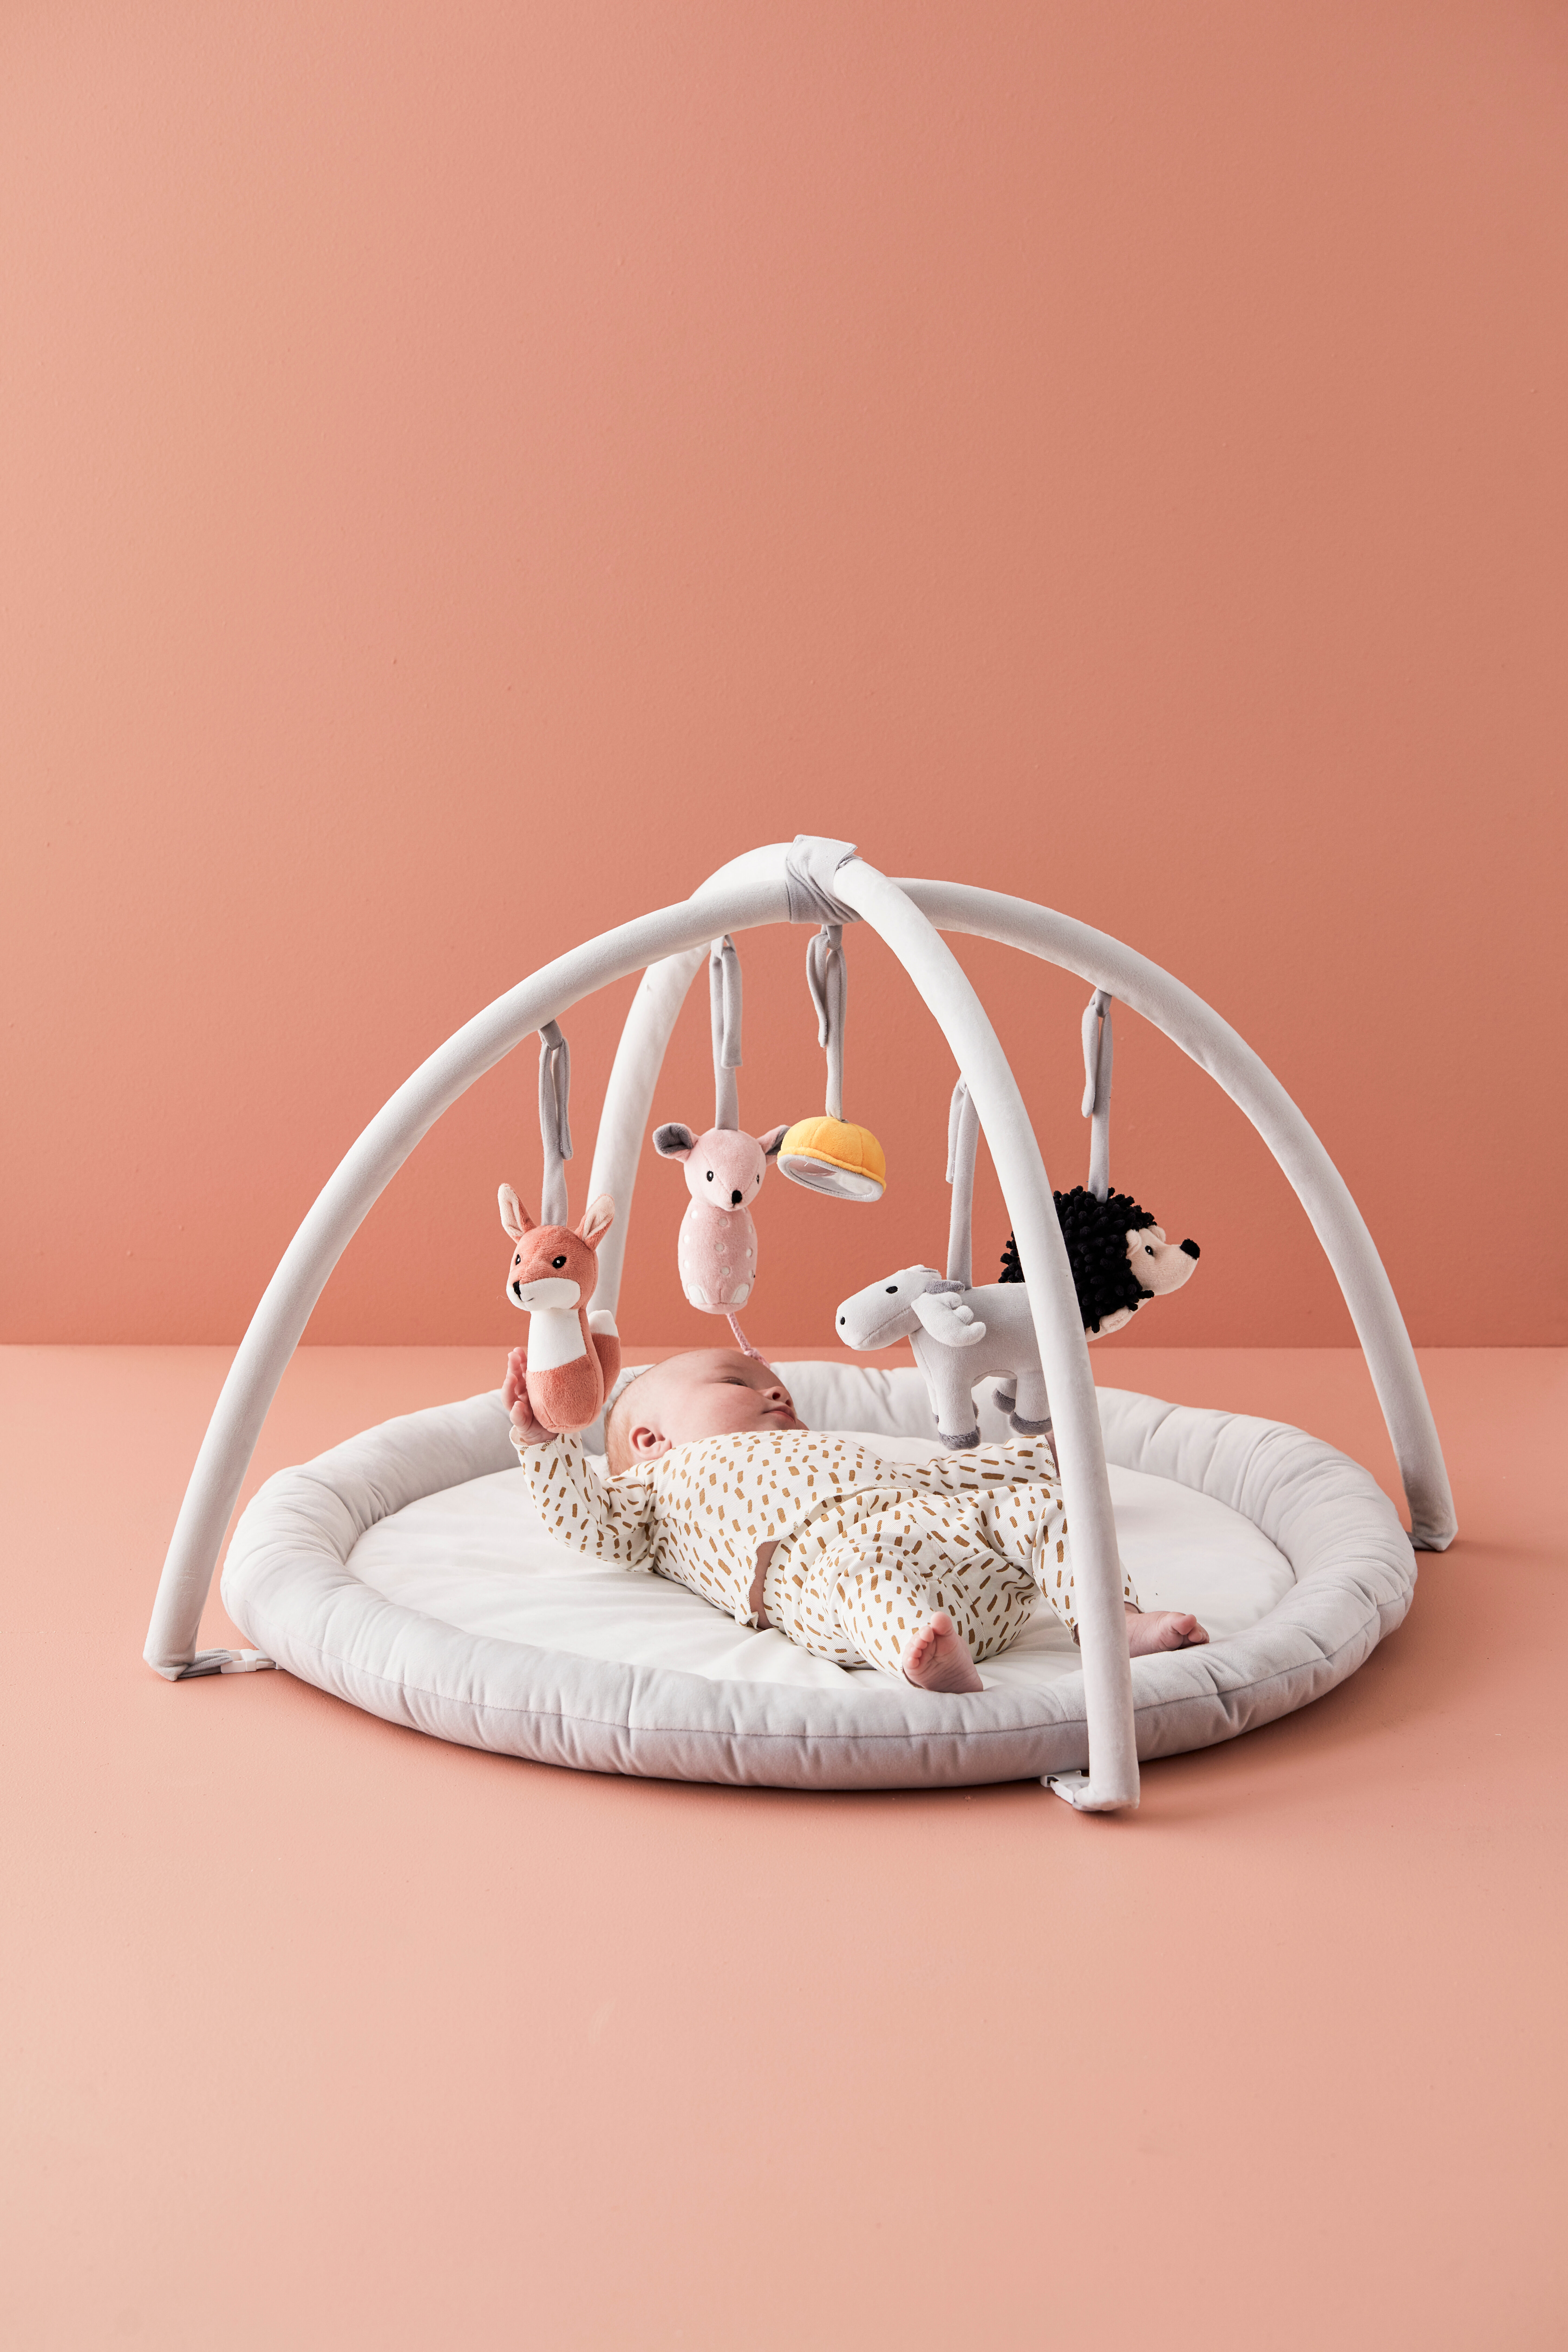 Wooden Baby Gym White Kid's Concept - Babyshop